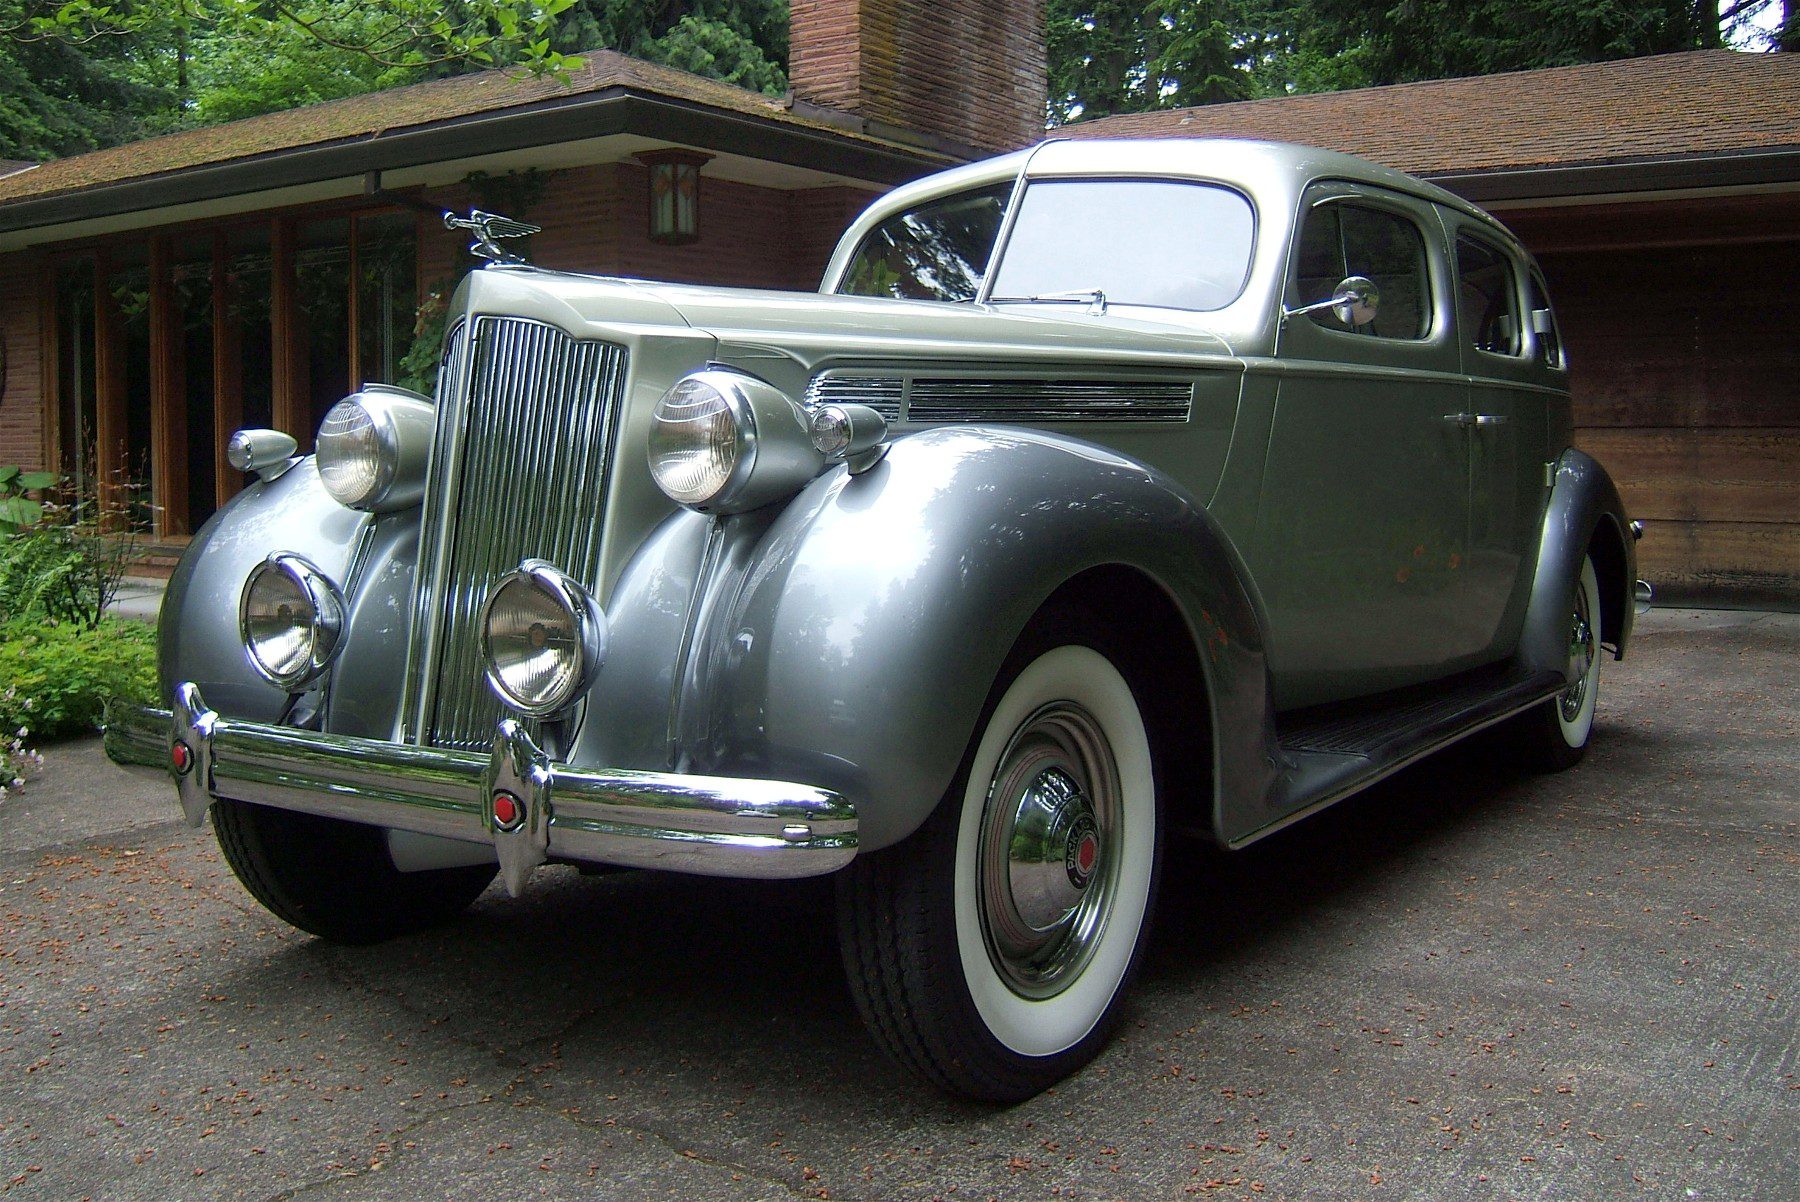 Robert & Frankie Douglas' 1938 Packard 120 Sedan